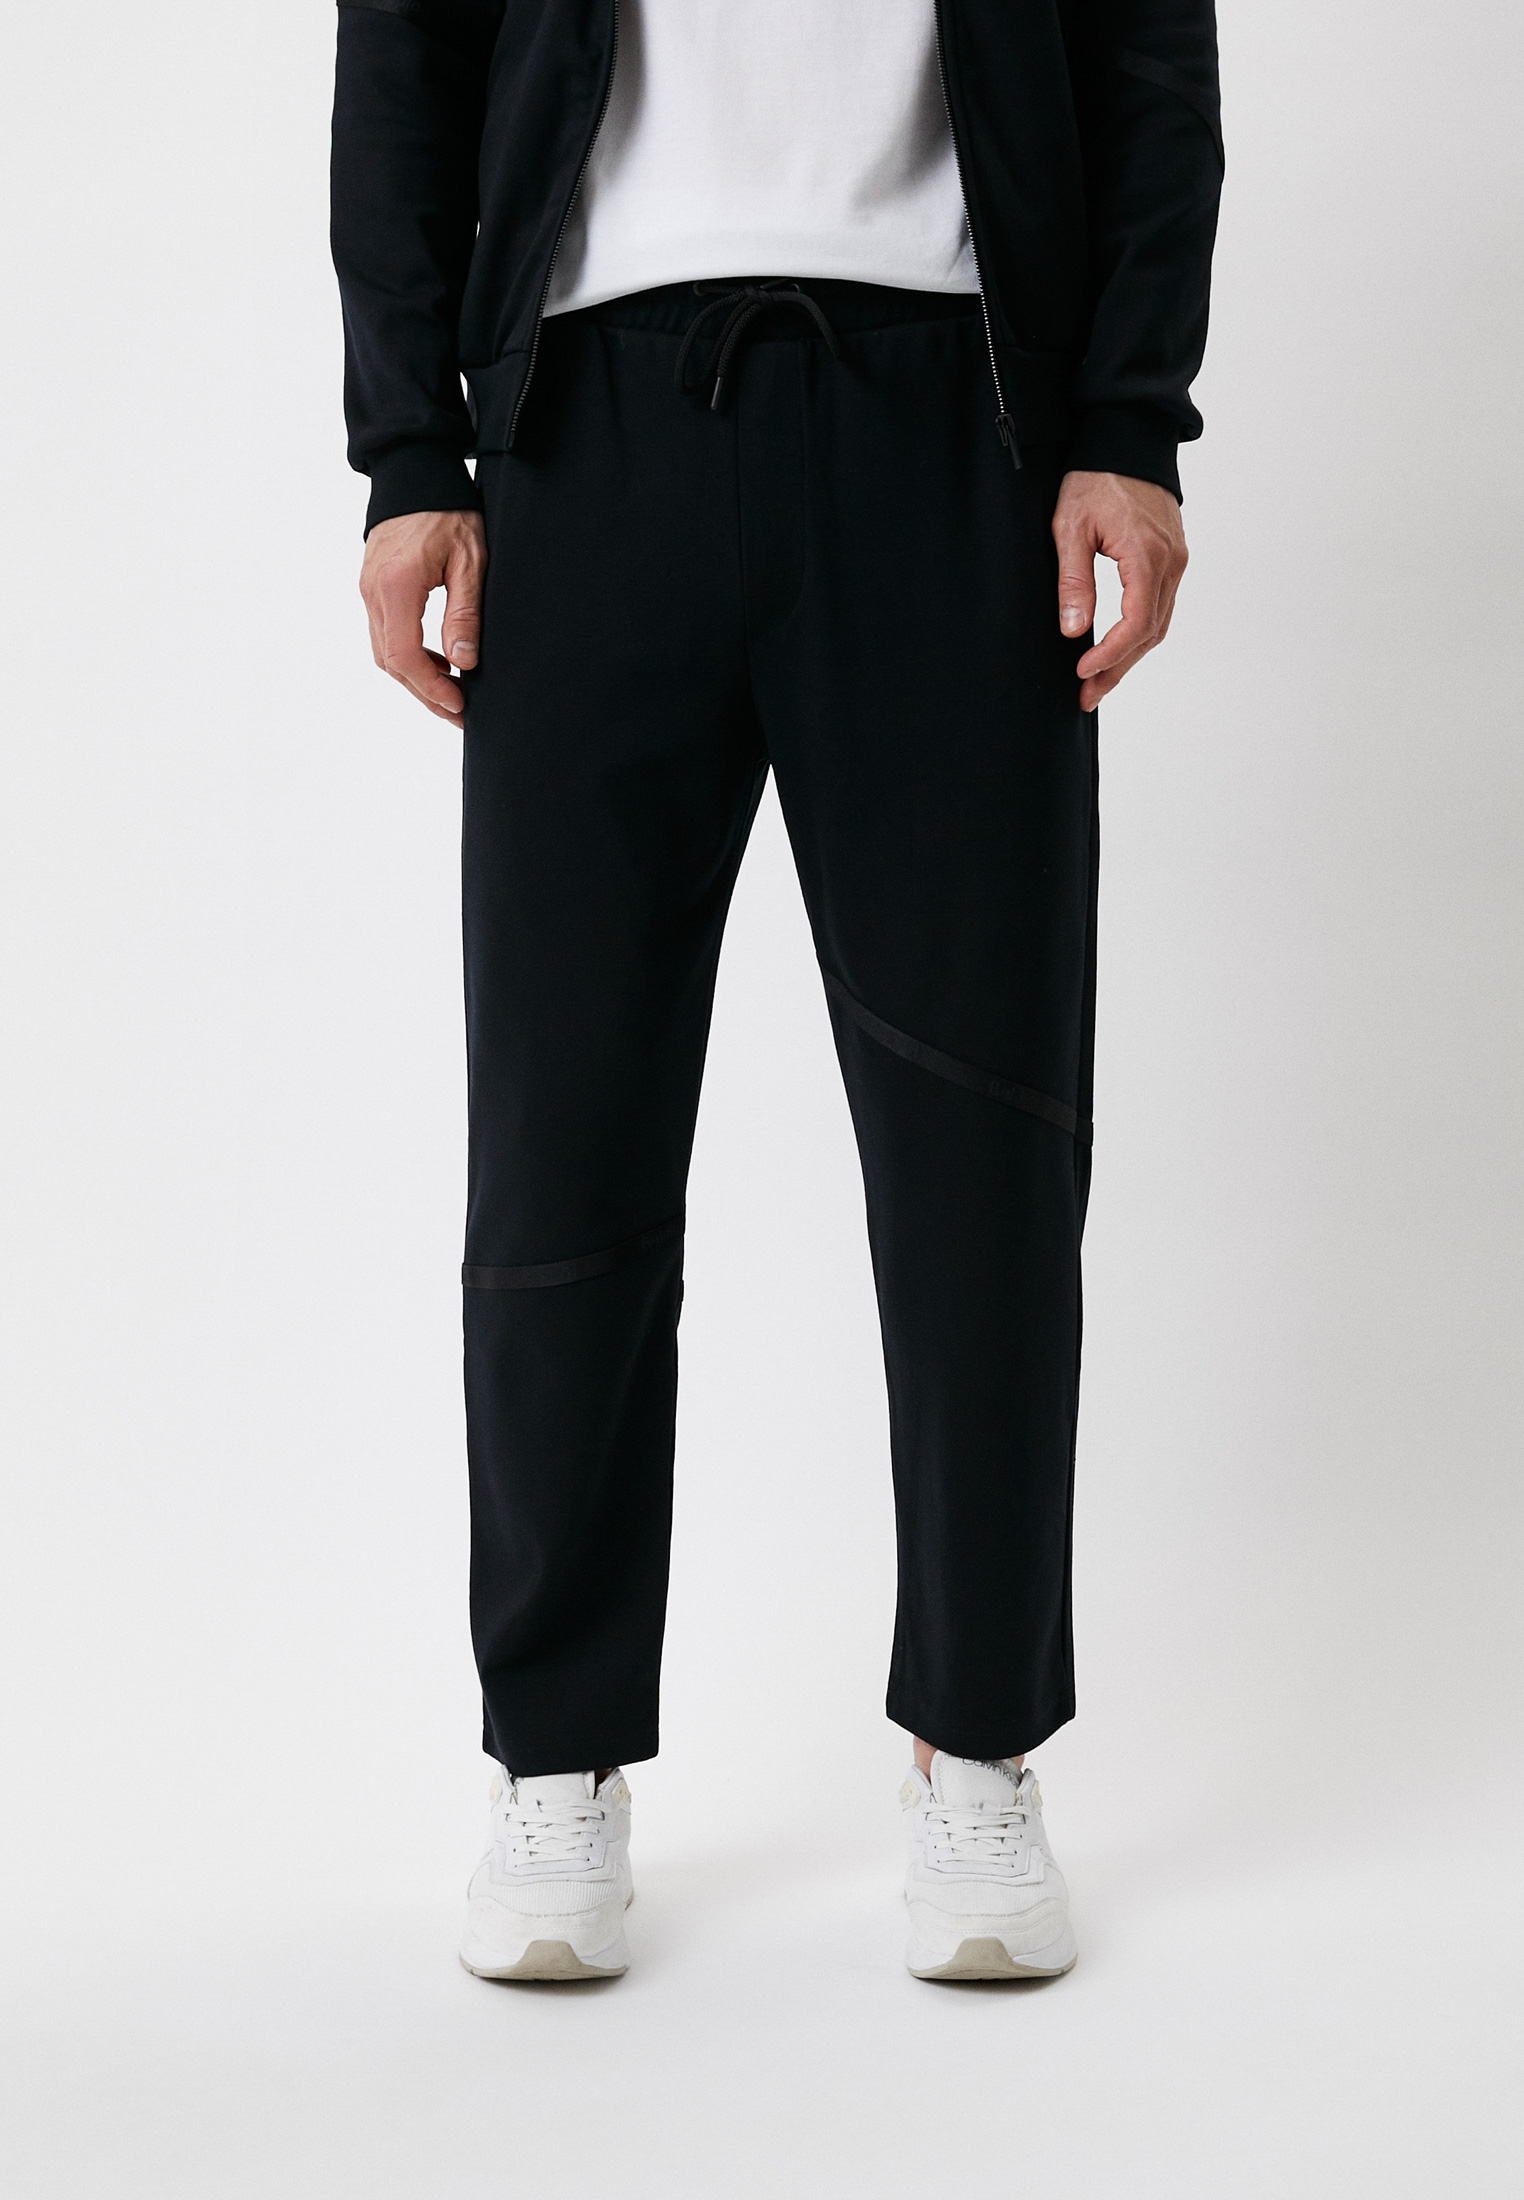 Мужские спортивные брюки Baldinini (Балдинини) M303: изображение 1